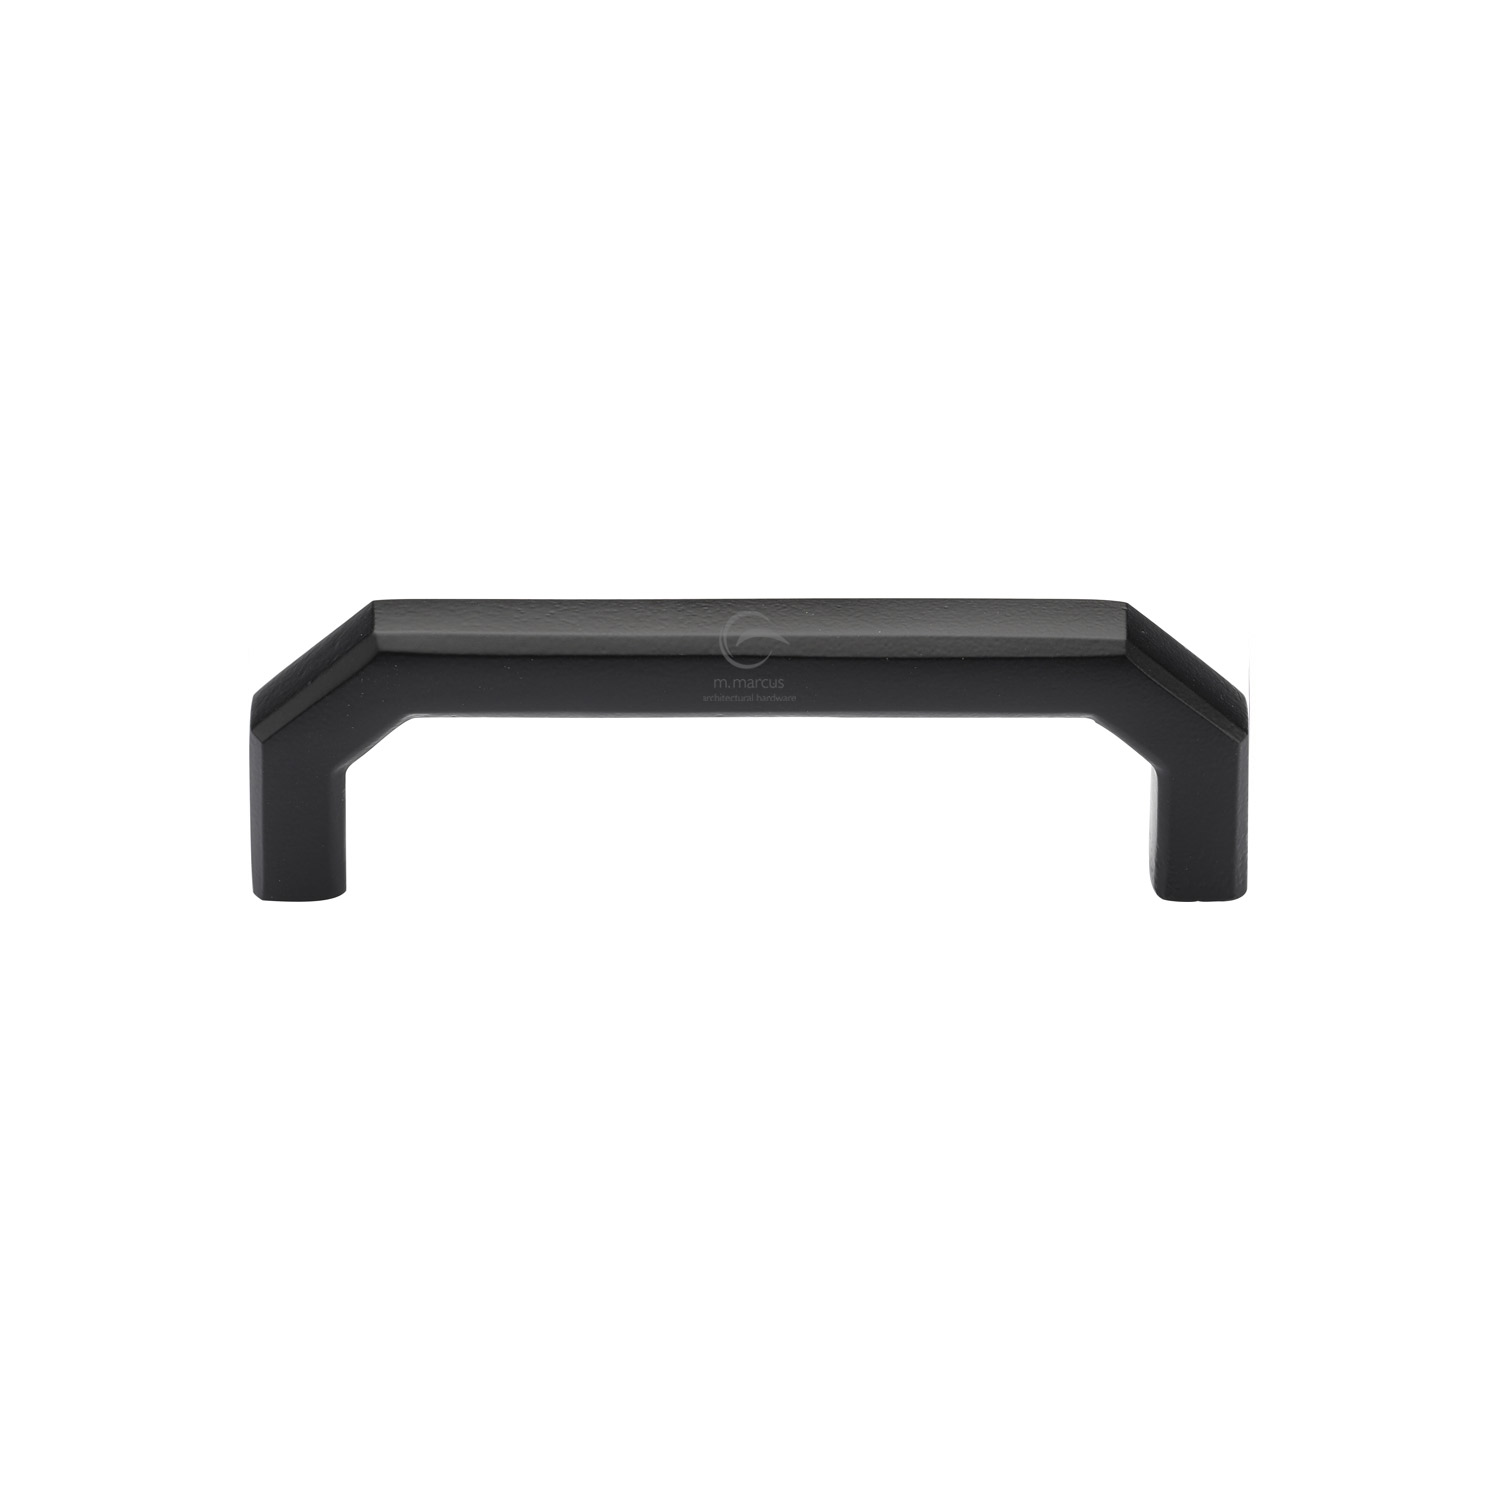 Black Iron Rustic Cabinet Pull Angular Design 96mm c/c